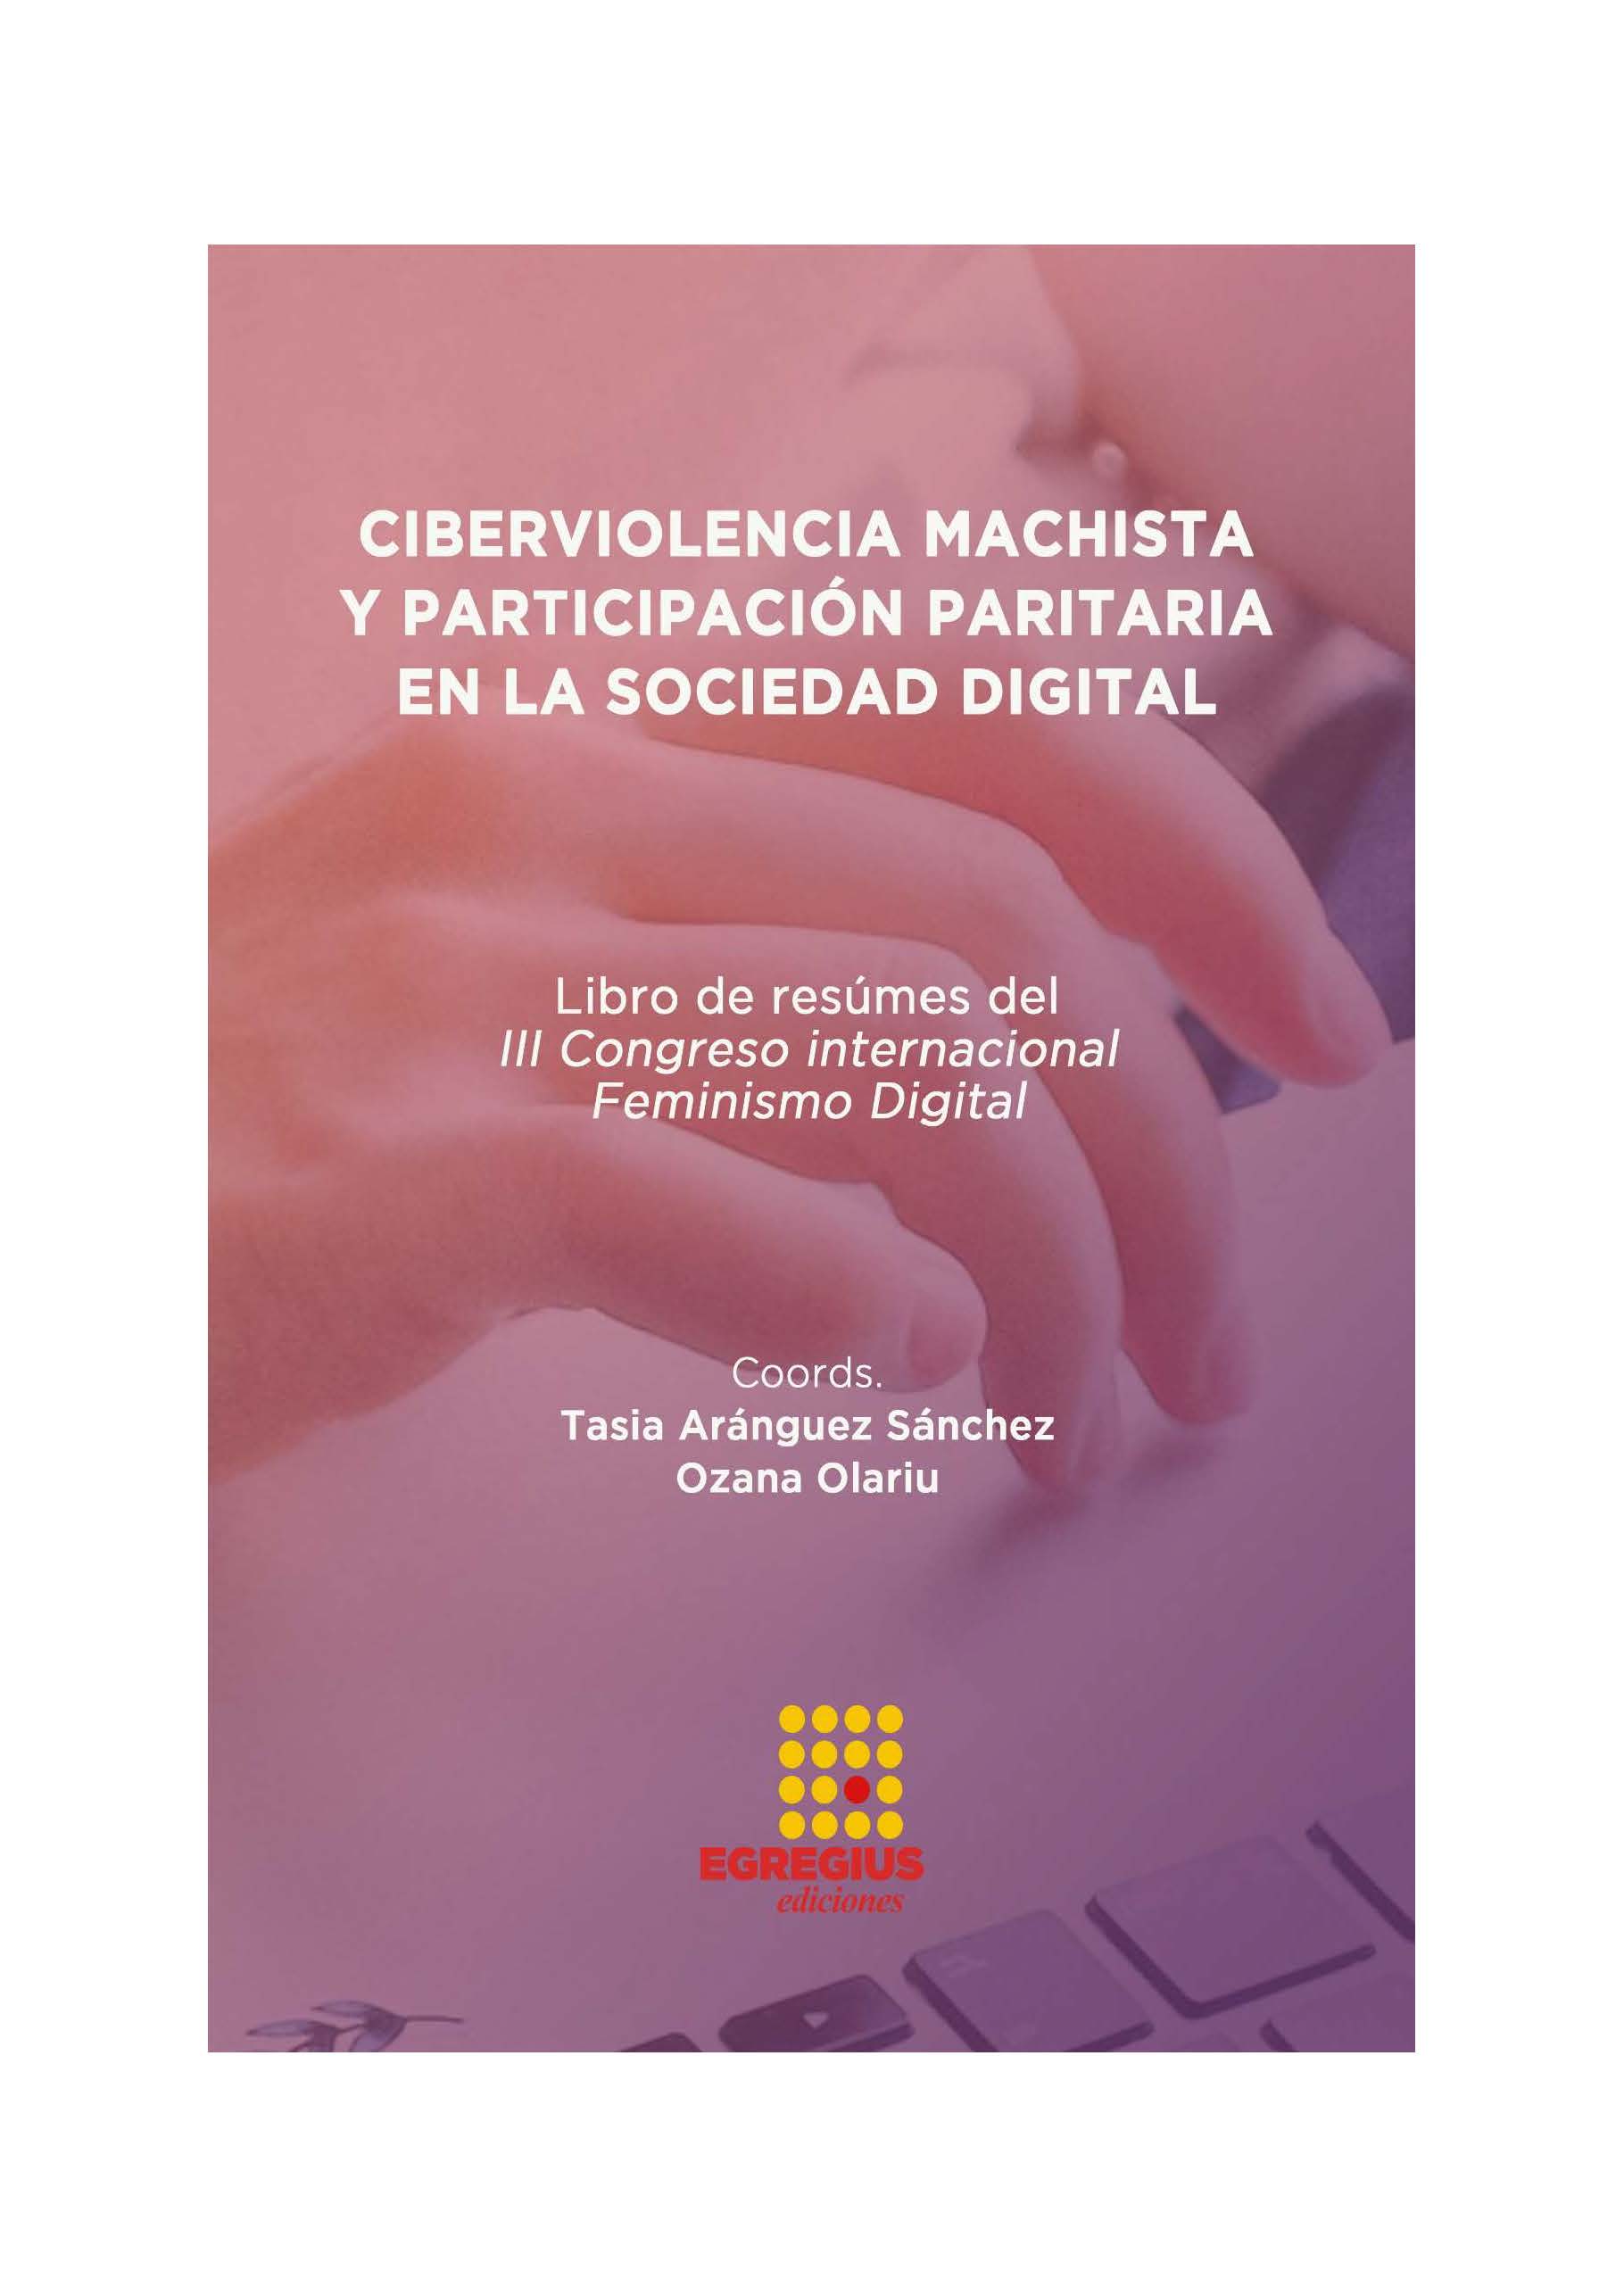 Imagen de portada del libro Ciberviolencia machista y participación paritaria en la sociedad digital